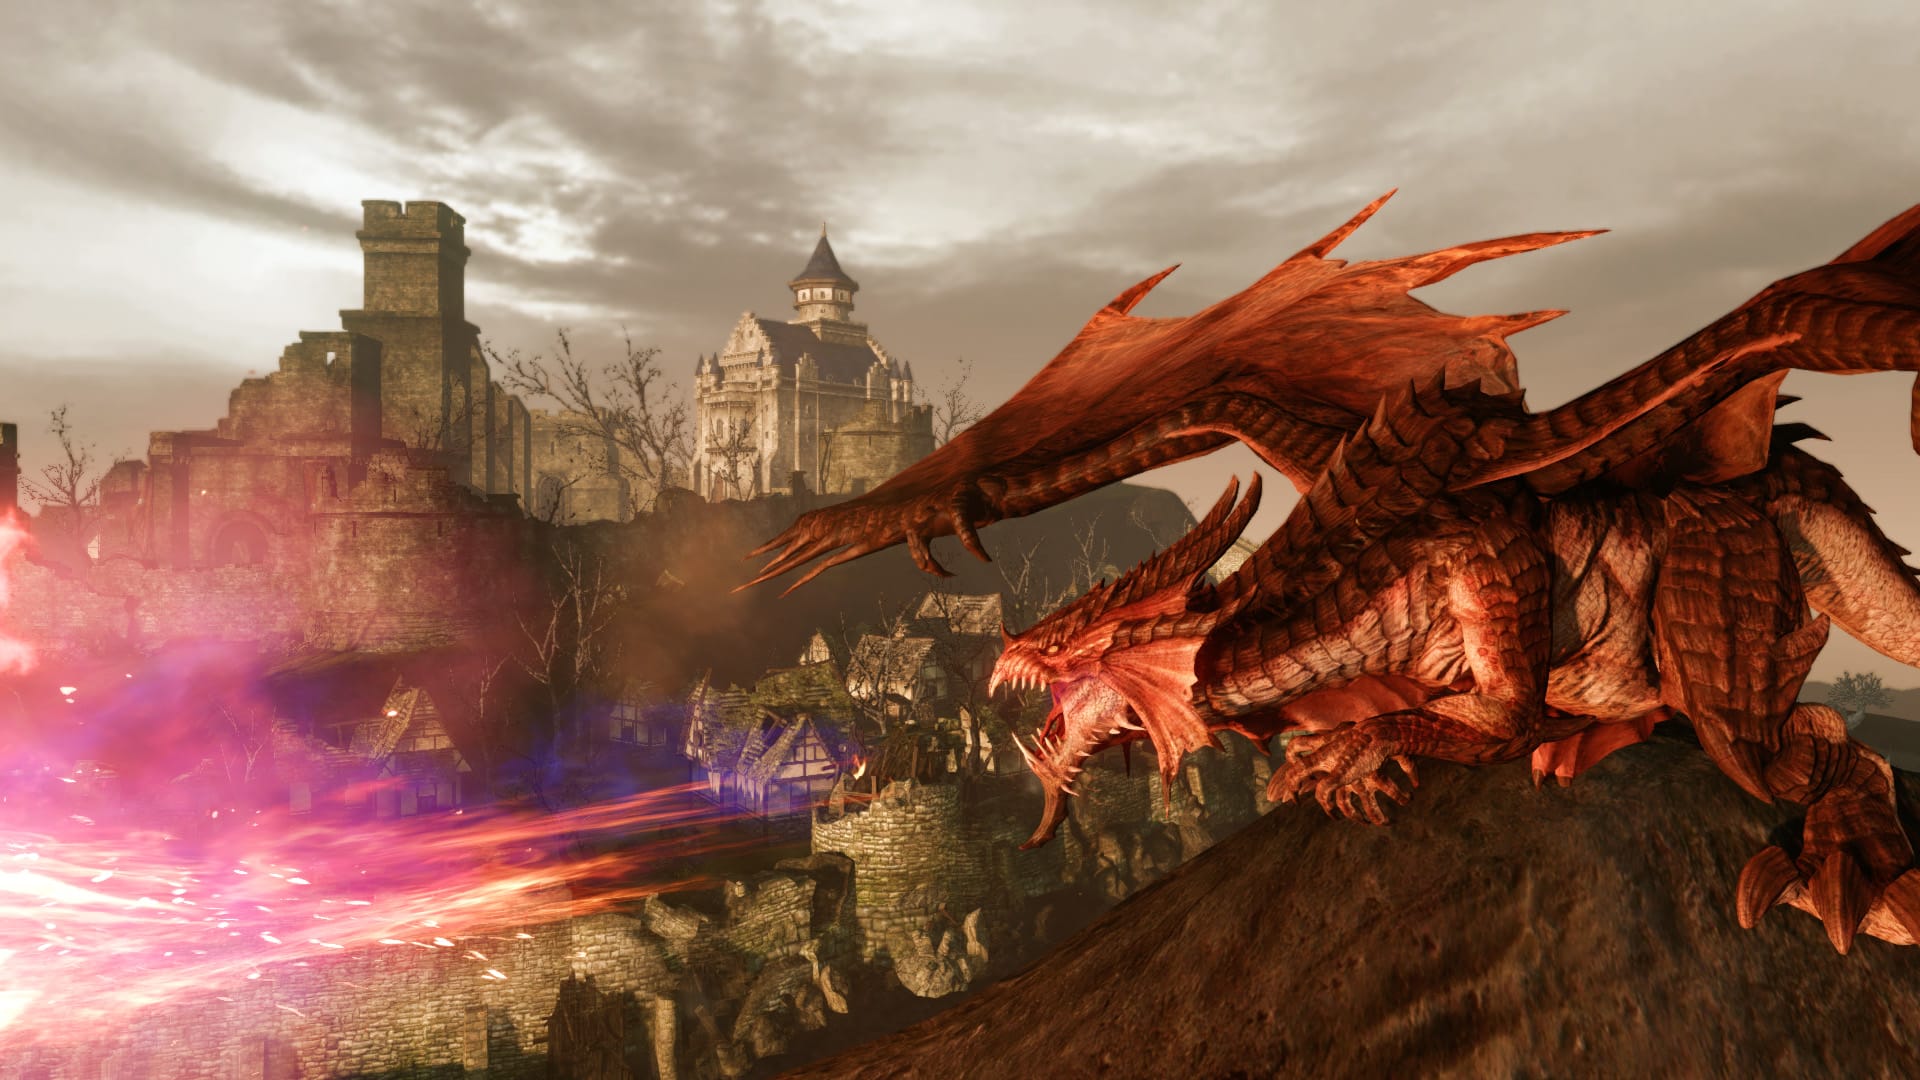 Beste MMORPG -spill: Arcehage. Bildet viser en drage i nærheten av en by